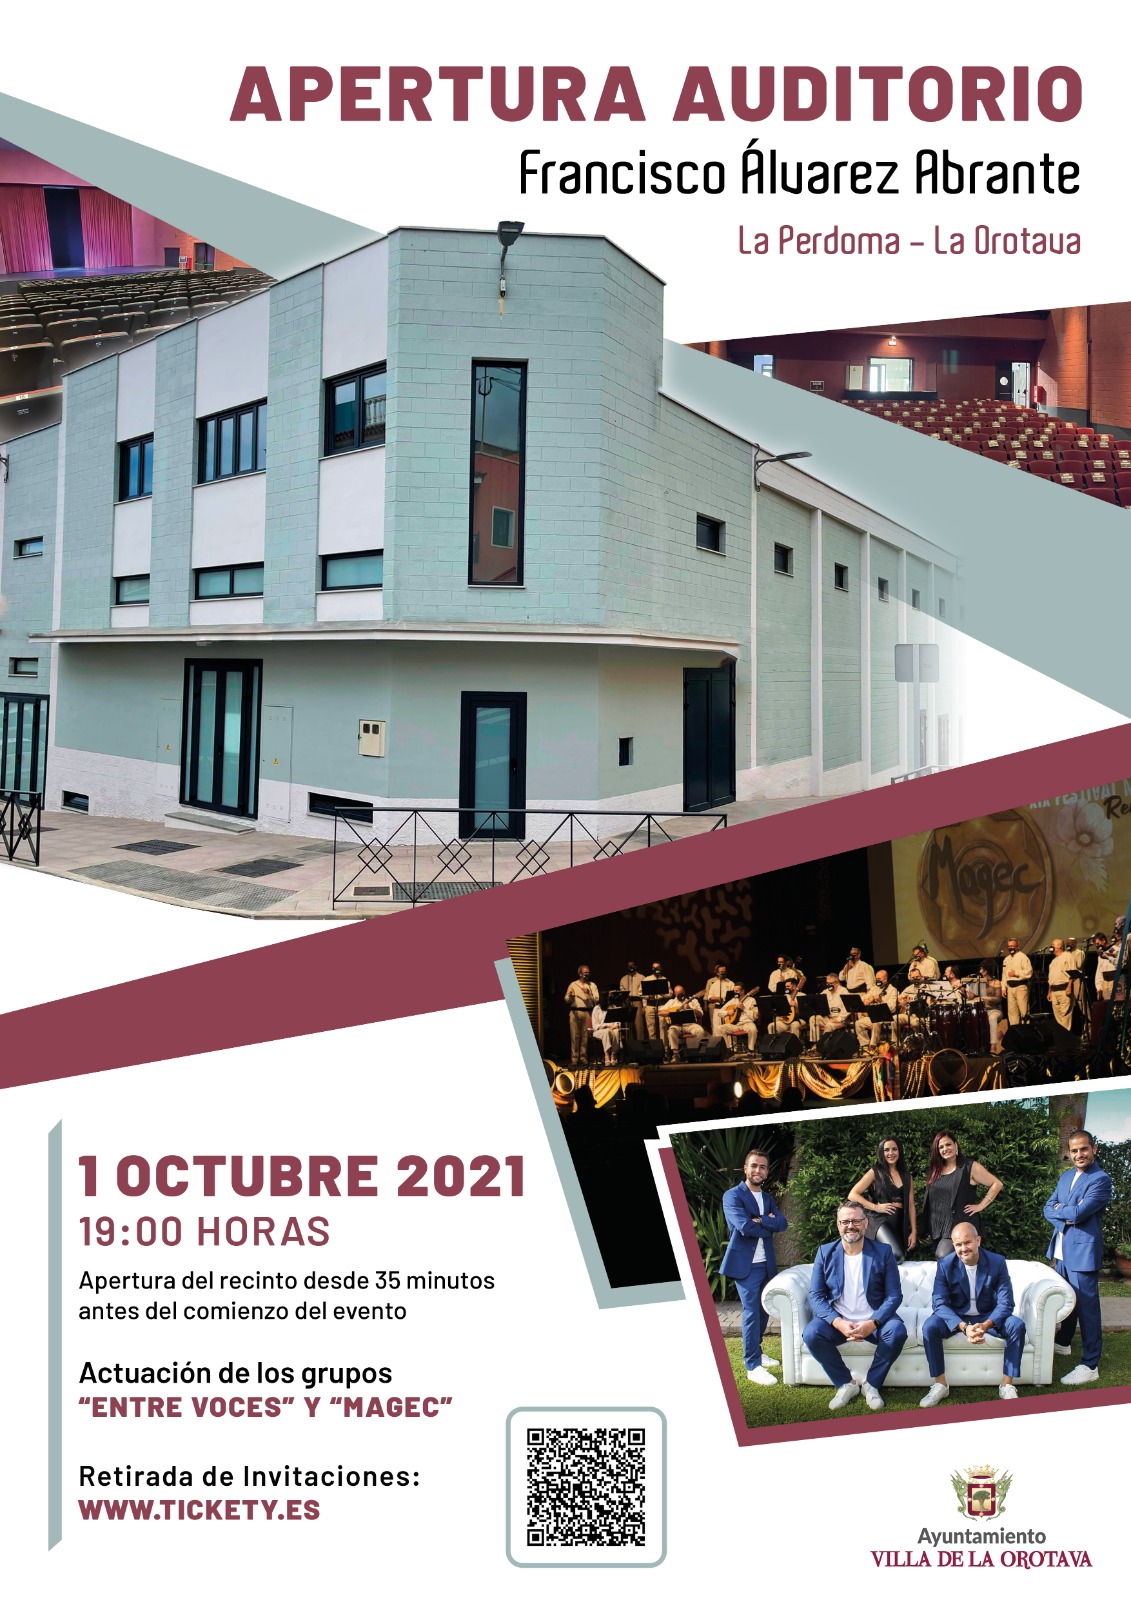 El antiguo Cine de La Perdoma albergará las actuaciones musicales de los grupos 'Magec' y 'Entre Voces' este viernes 1 de octubre, a partir de las 19:00 horas